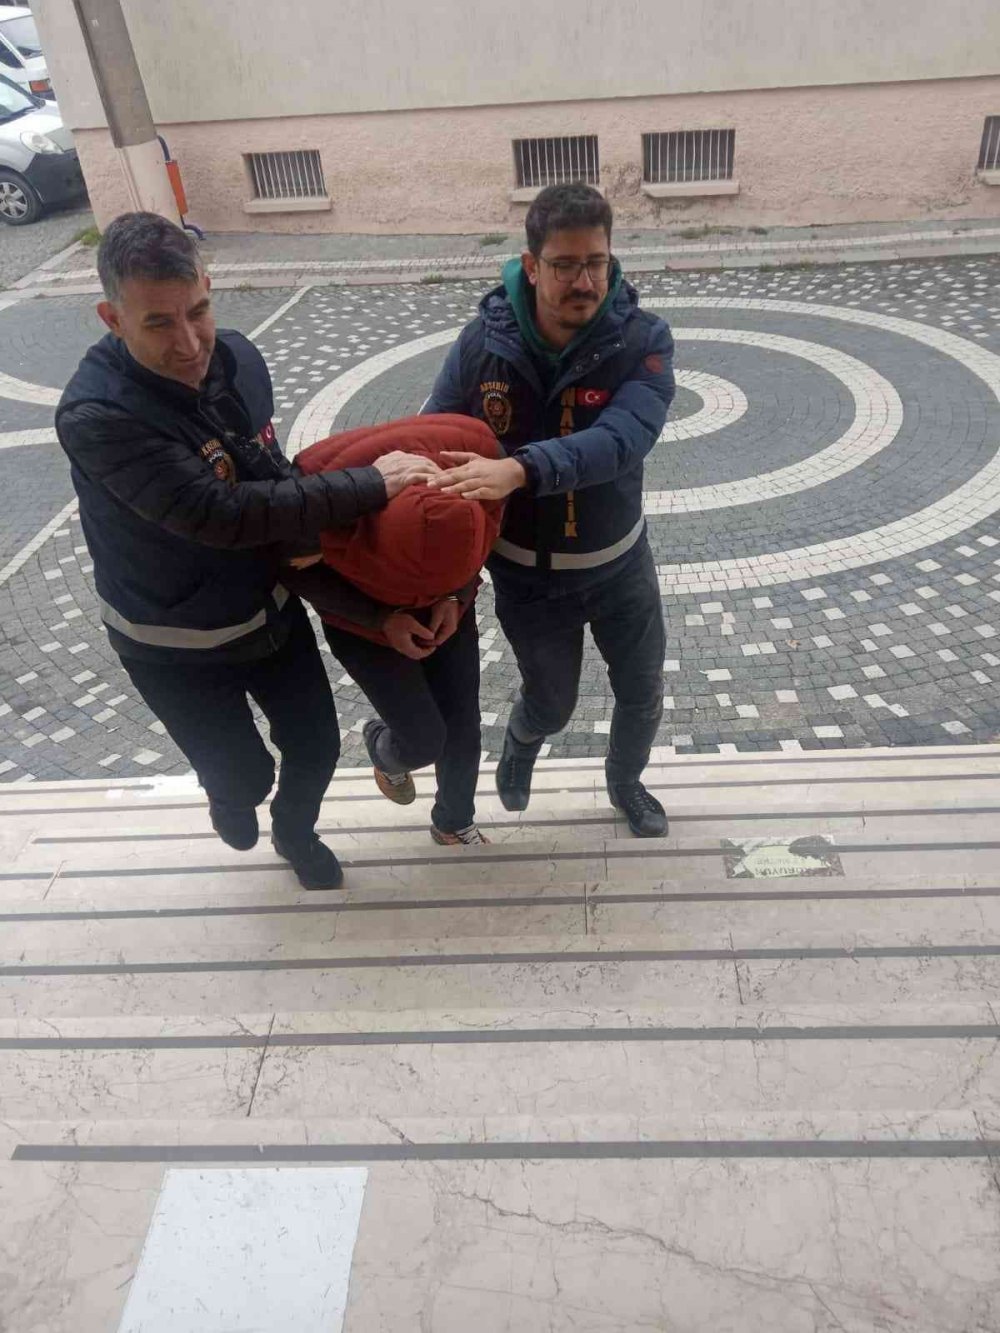 Akşehir’de uyuşturucu operasyonu: 3 gözaltı